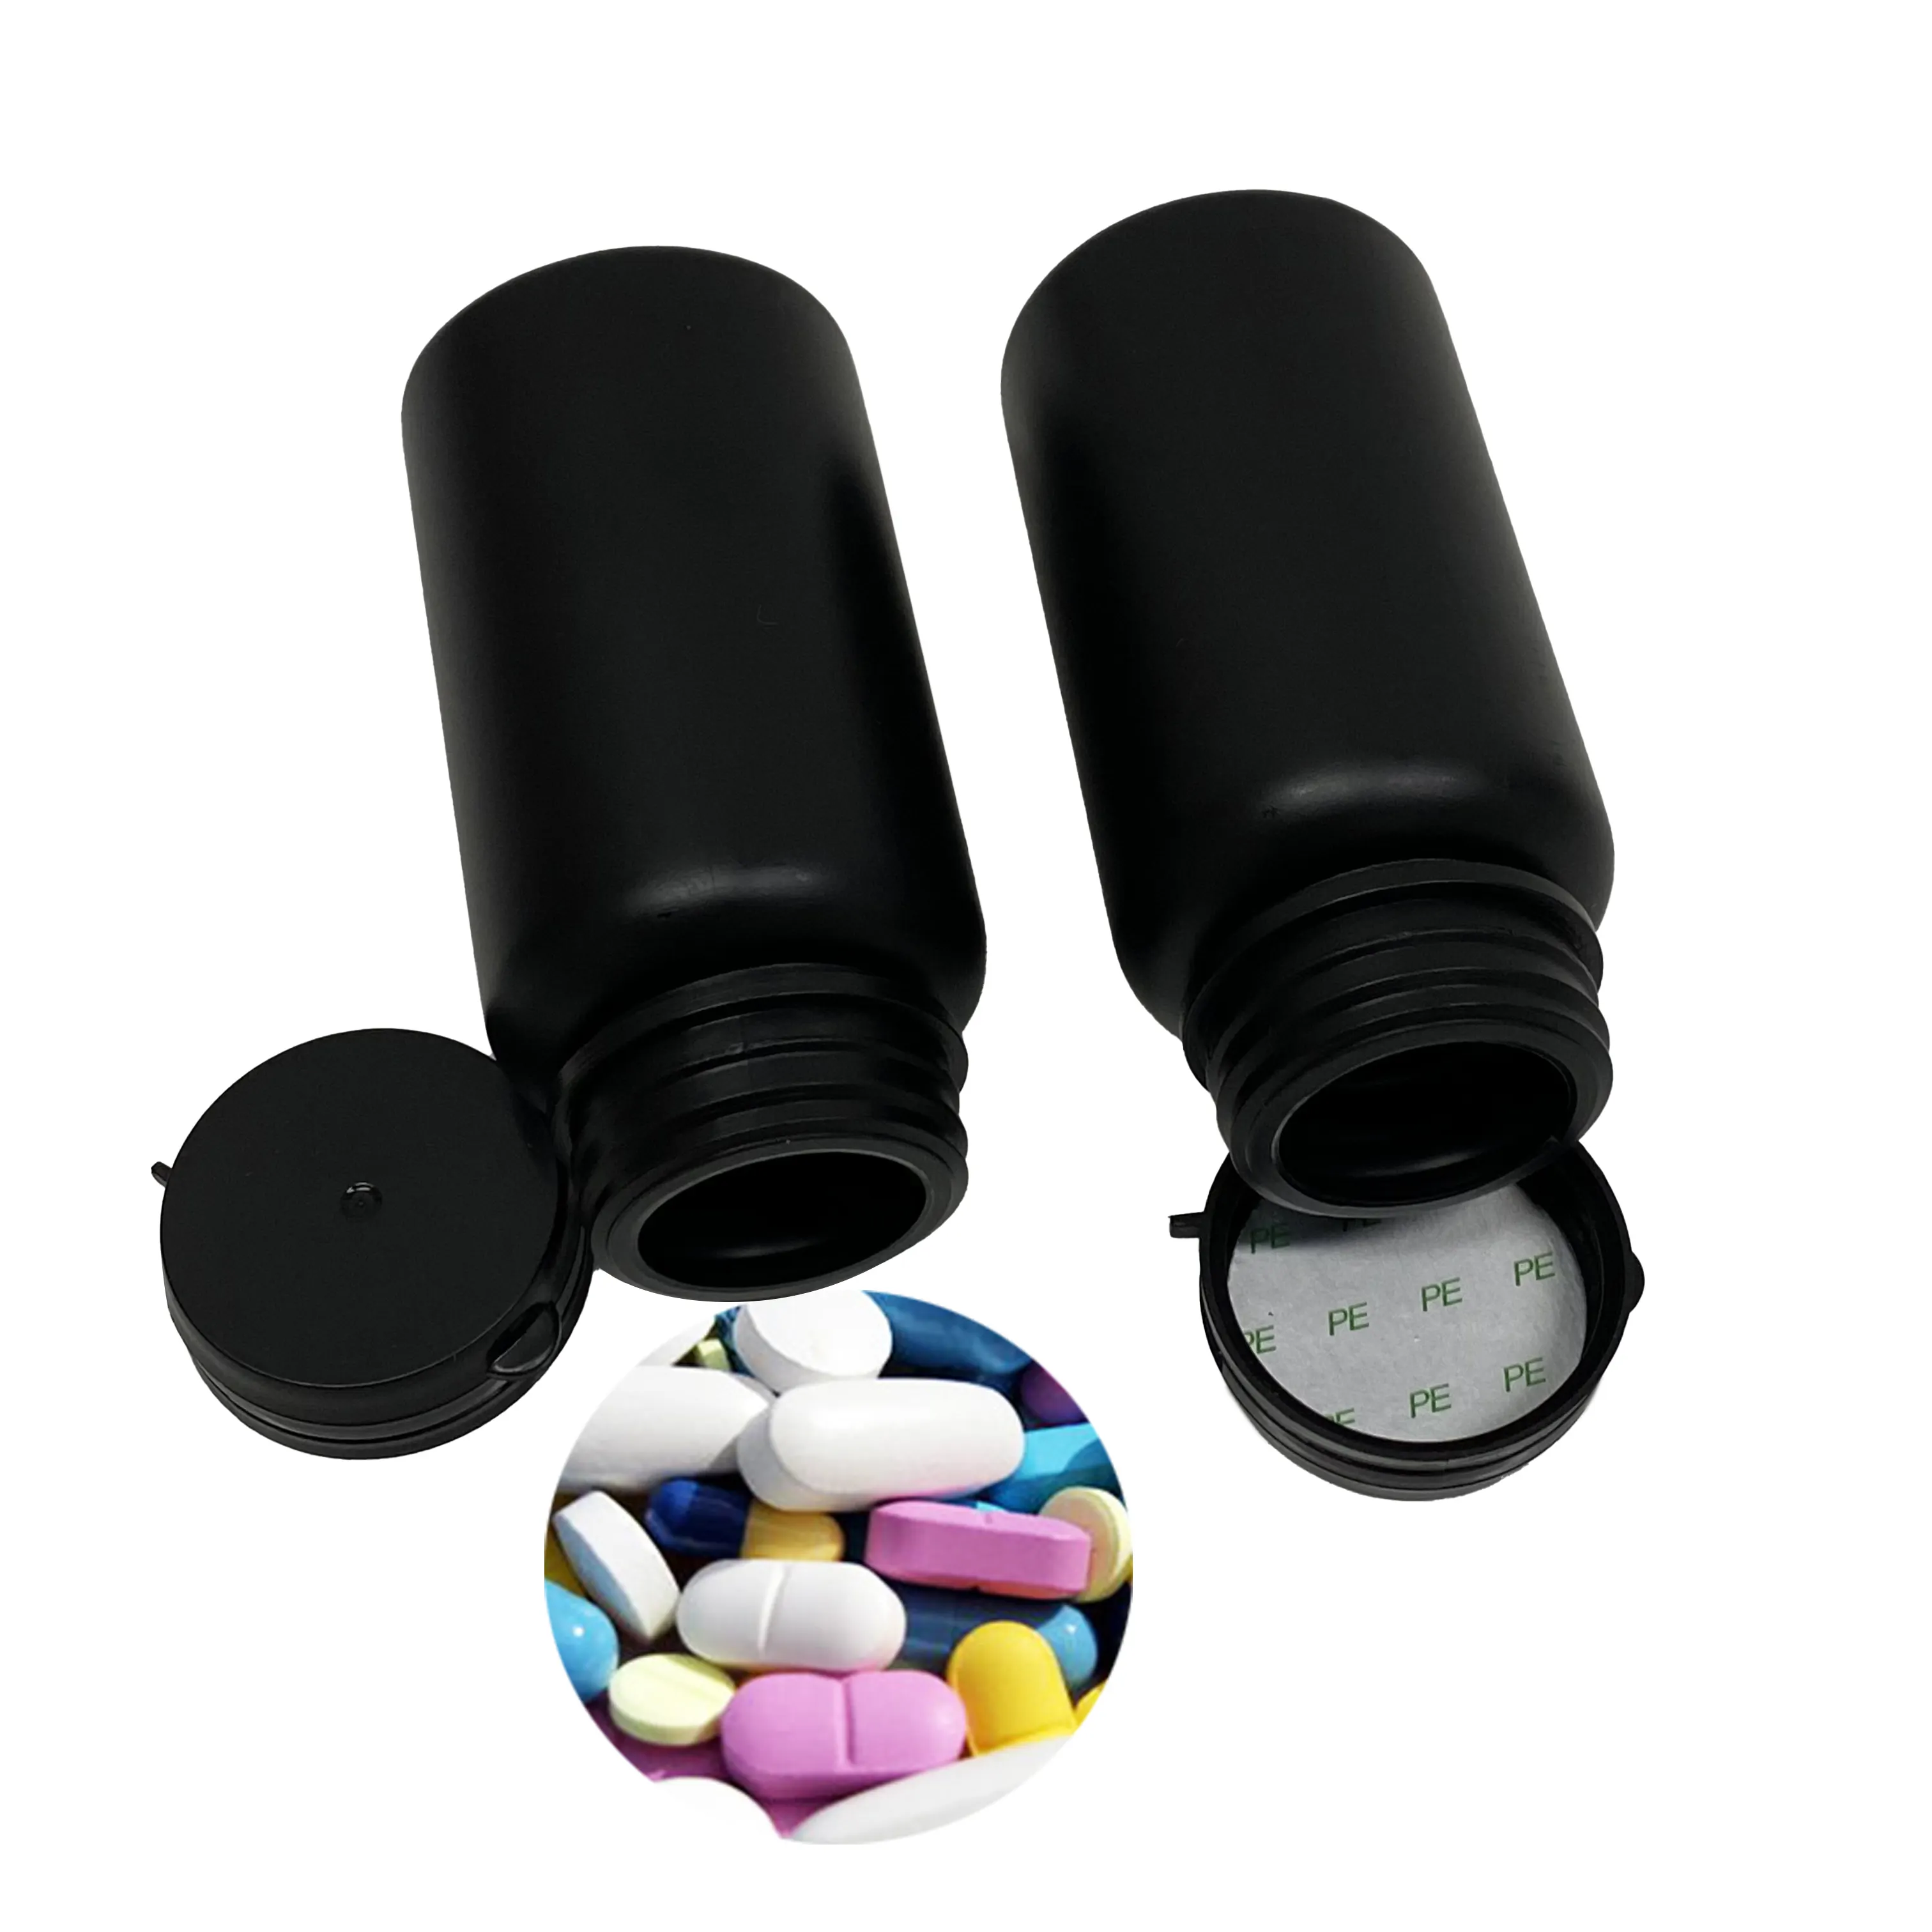 Botella de plástico PET negra farmacéutica con tapa negra a prueba de niños, tarro de PET negro para cápsulas de pastillas